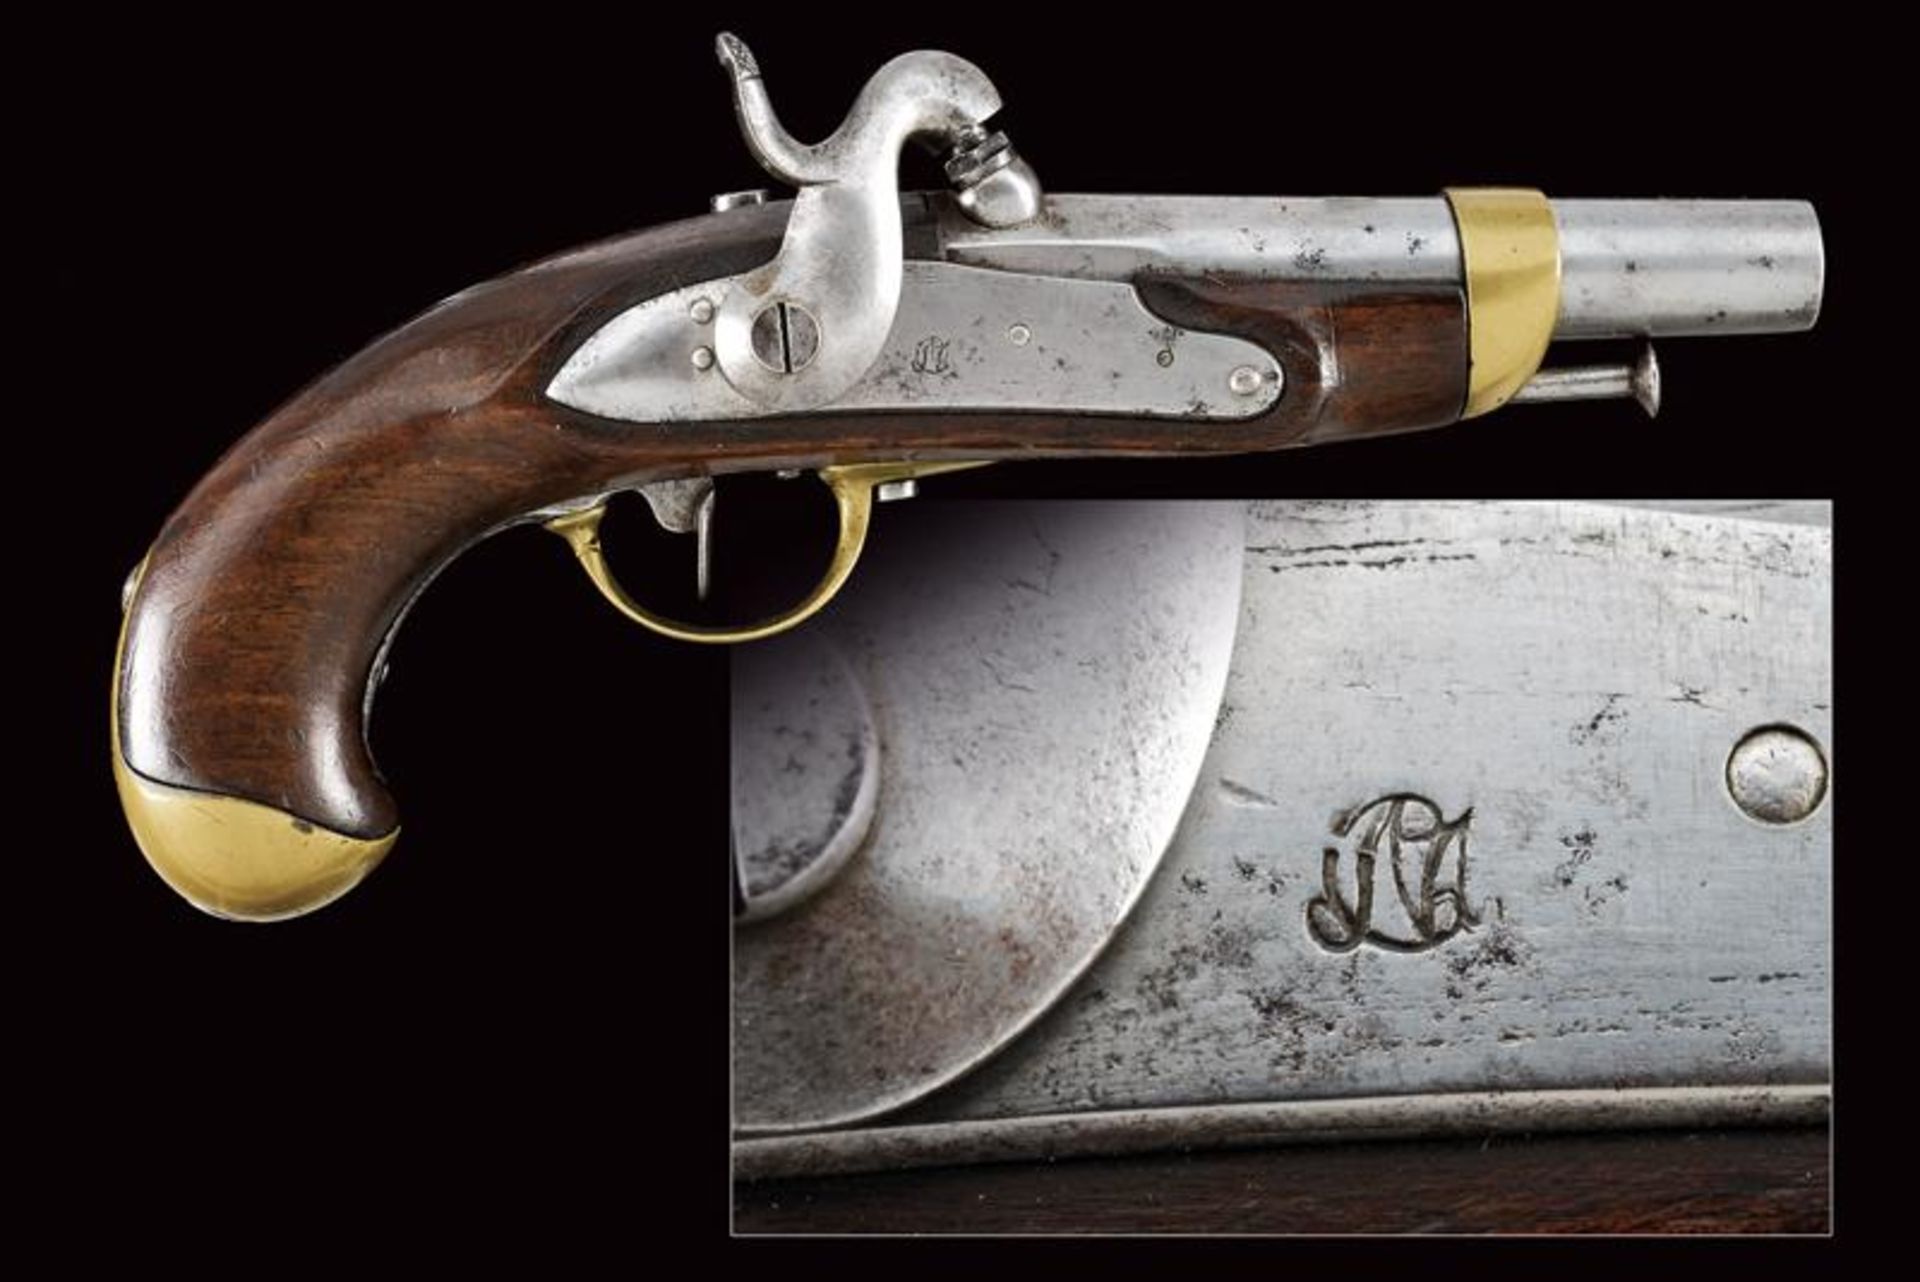 An 1855 model gendarmerie percussion pistol